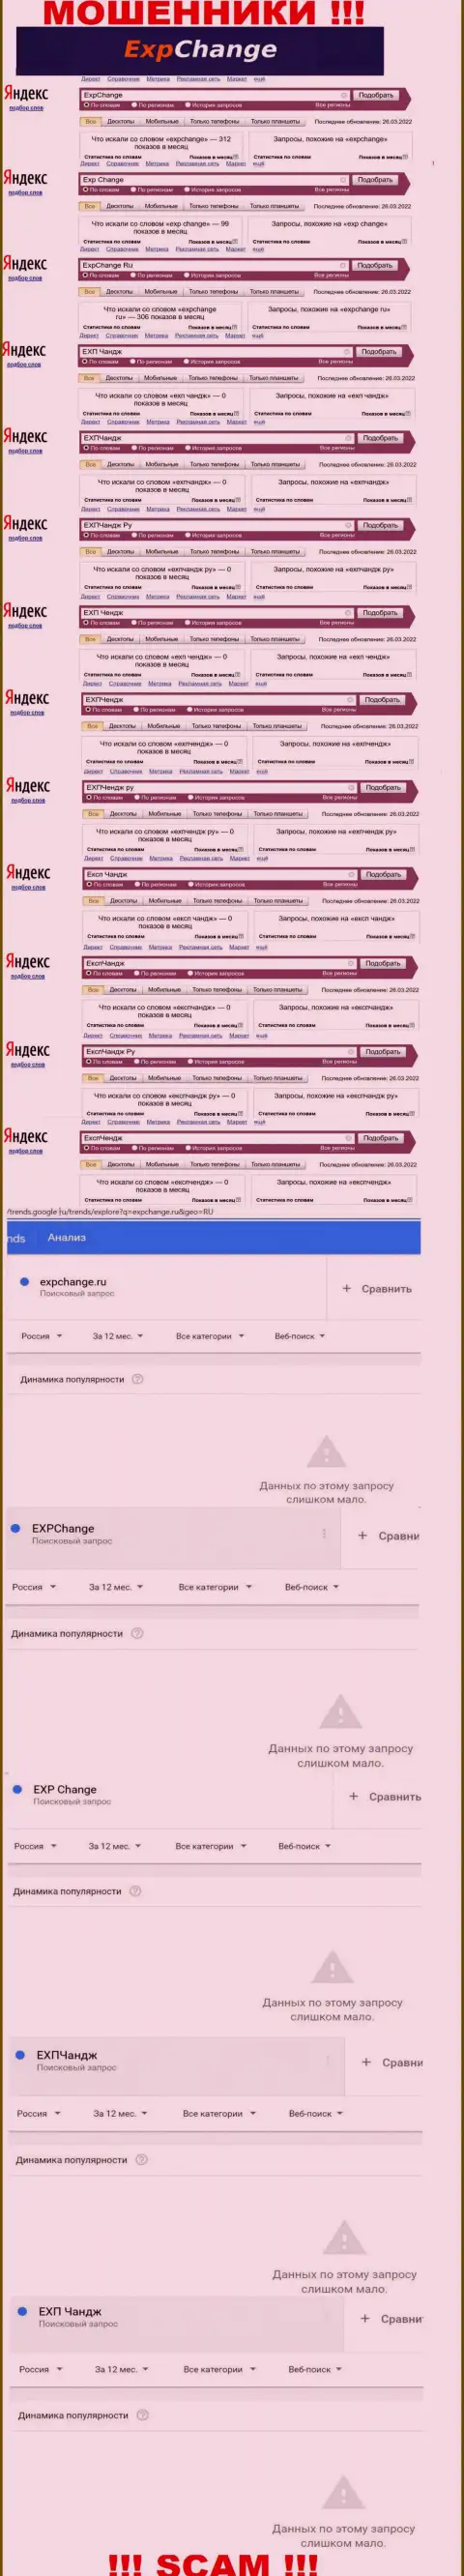 Число запросов посетителями глобальной сети материала об мошенниках ExpChange Ru